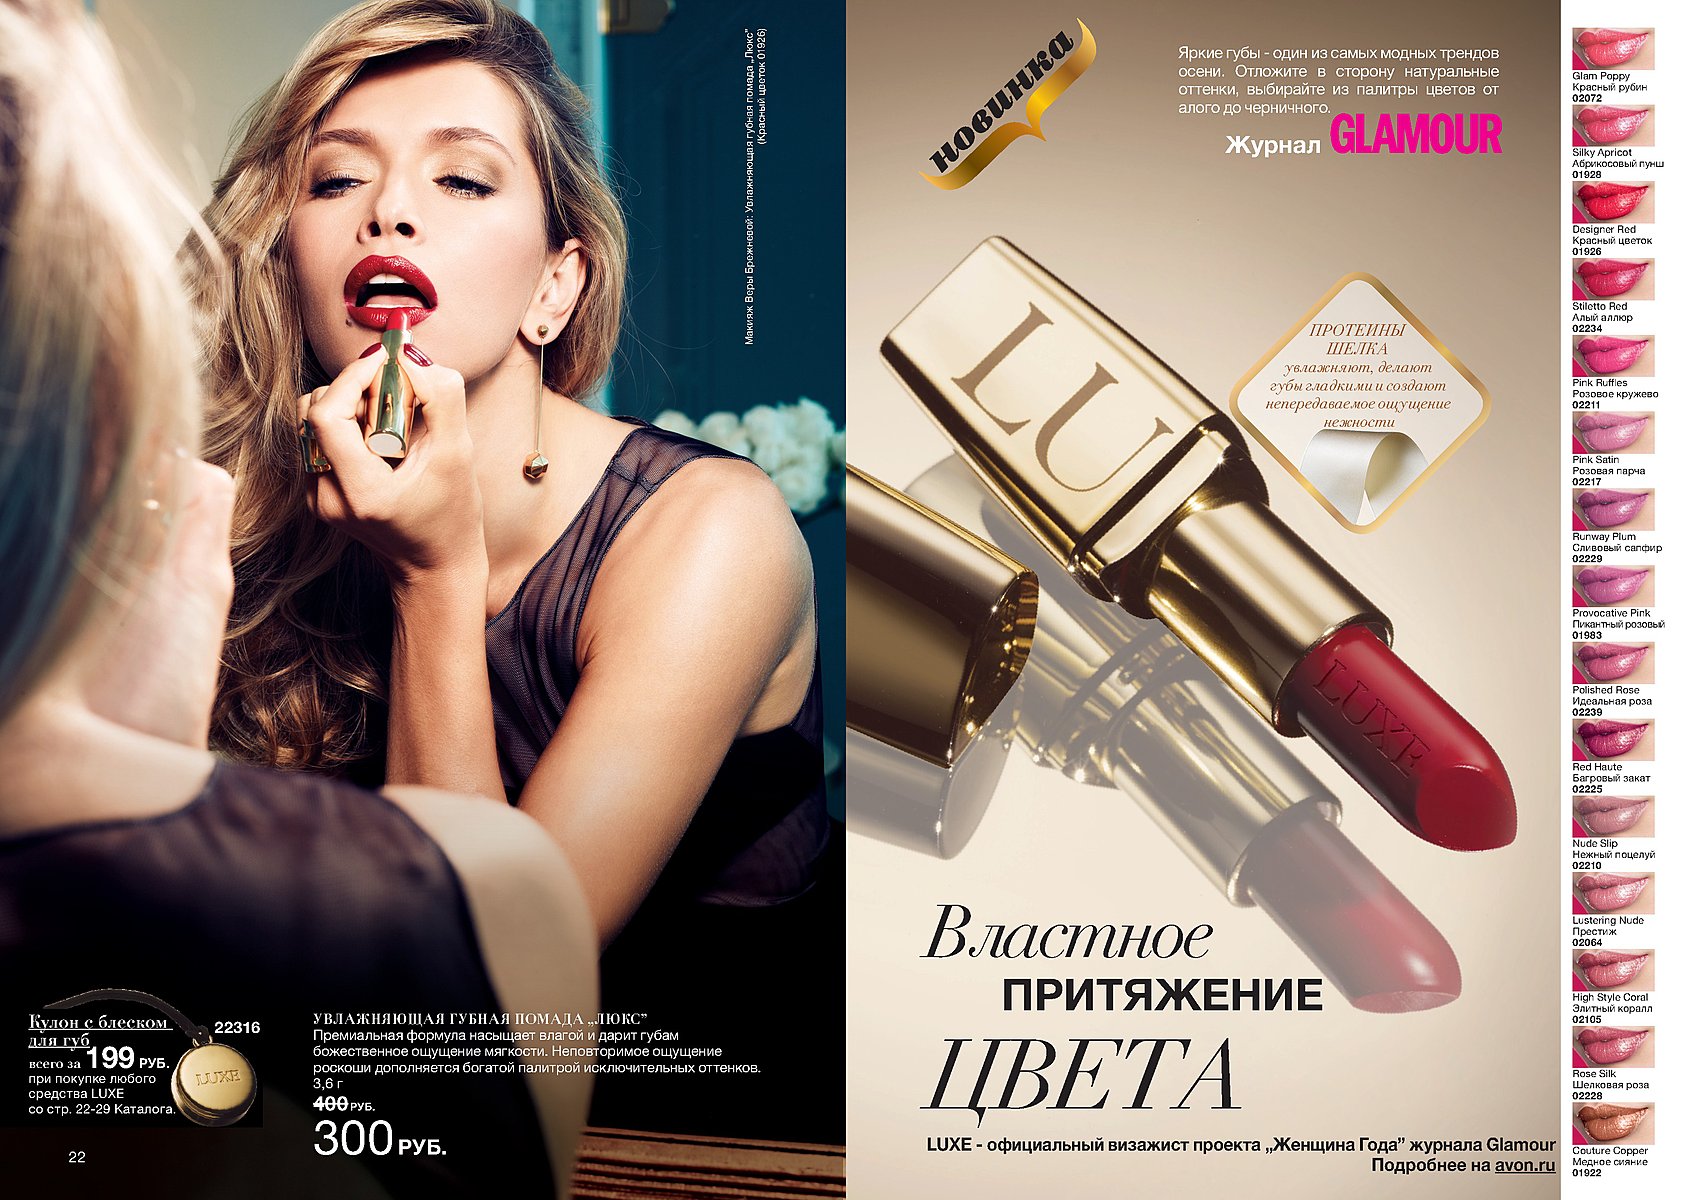 Рекламный обзор. Реклама в журнале. Реклама в журнале пример. Реклама в глянцевом журнале. Реклама косметики в журналах.